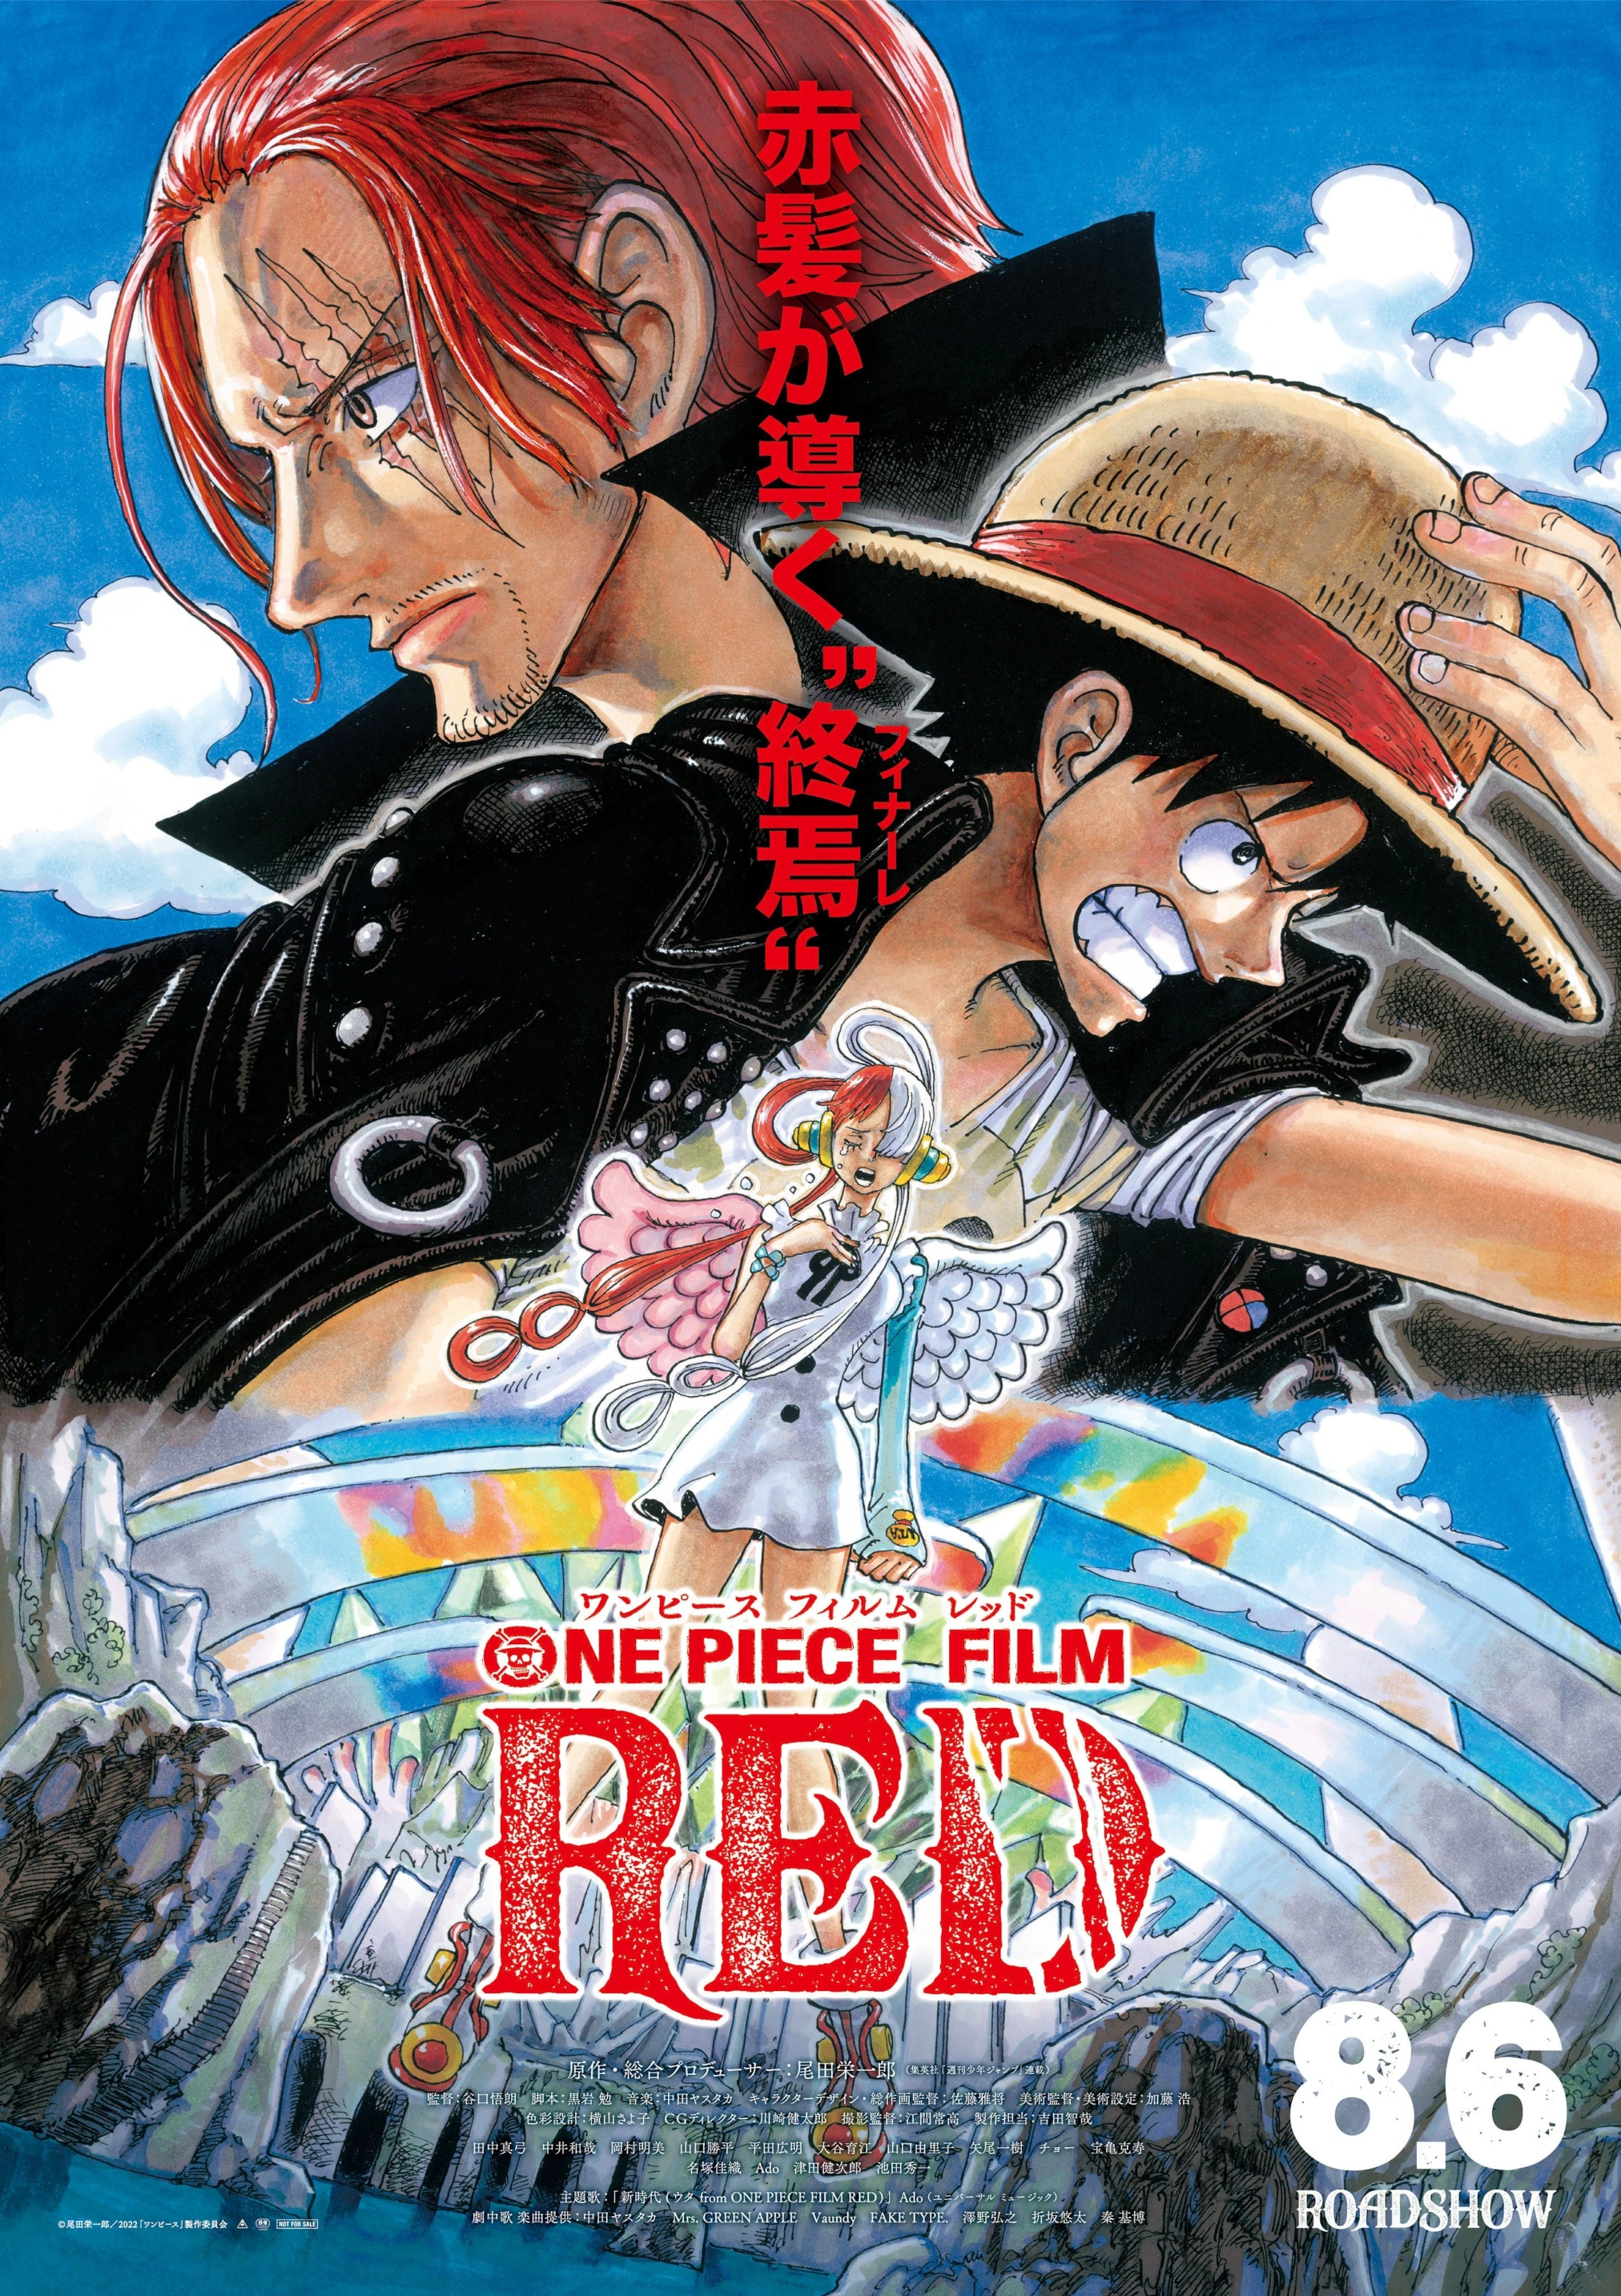 One Piece revelou Poster Promocional do Zou Arc, Anime